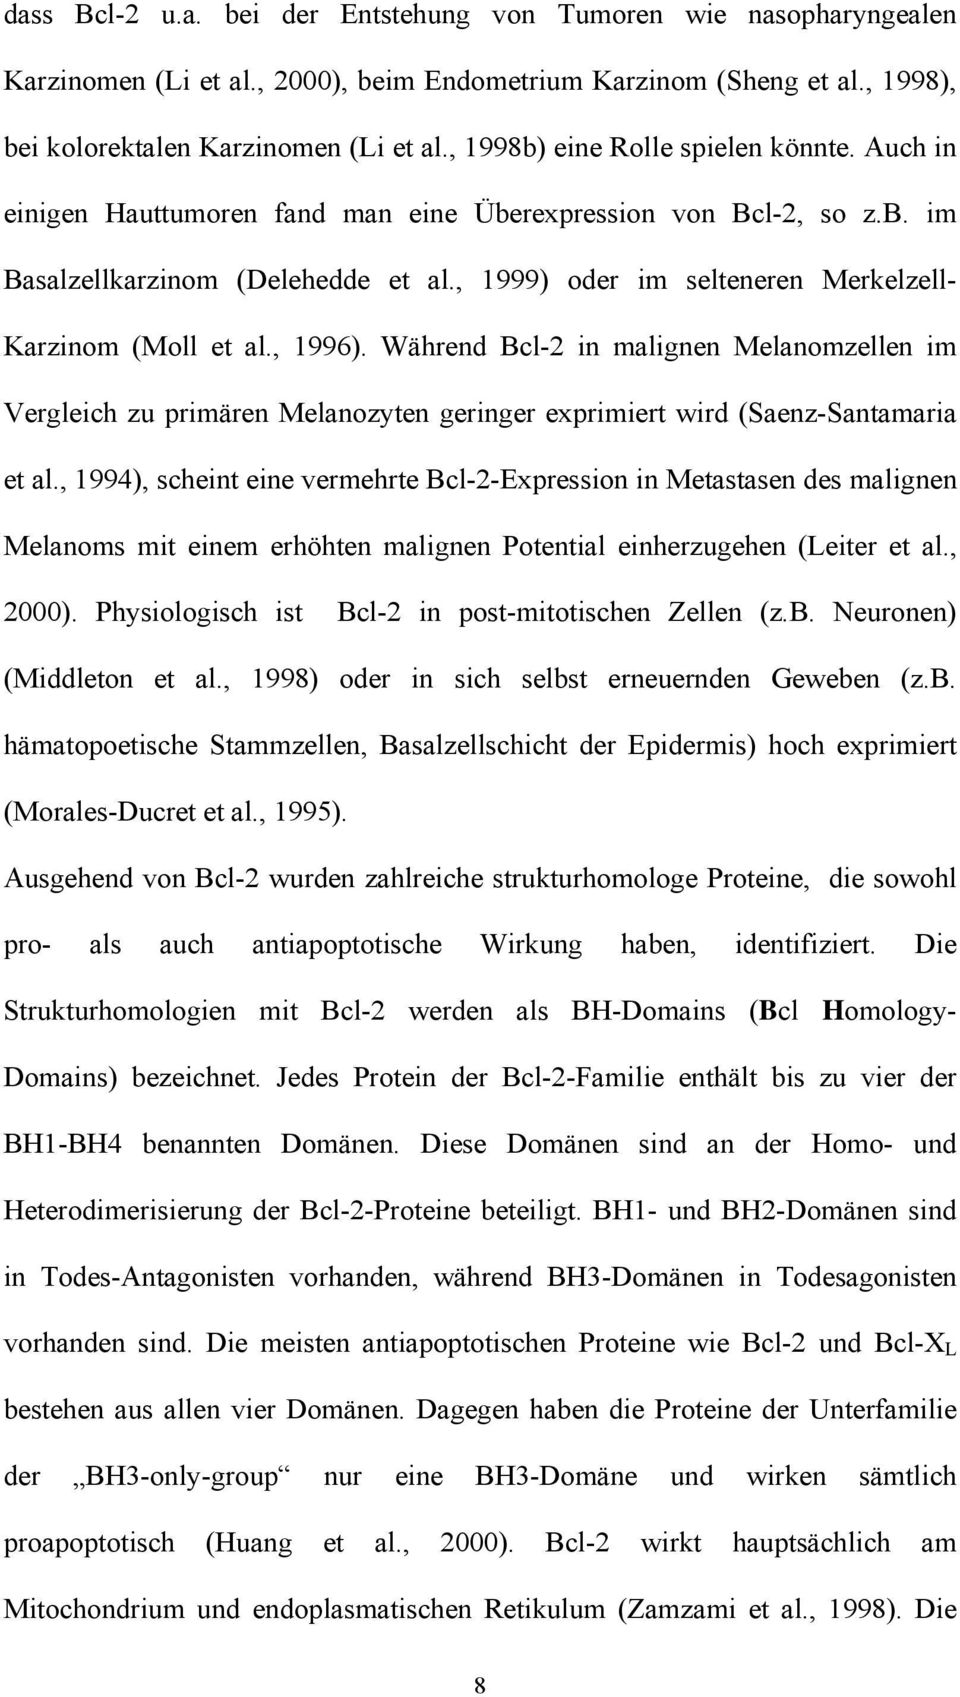 , 1999) oder im selteneren Merkelzell- Karzinom (Moll et al., 1996). Während Bcl-2 in malignen Melanomzellen im Vergleich zu primären Melanozyten geringer exprimiert wird (Saenz-Santamaria et al.